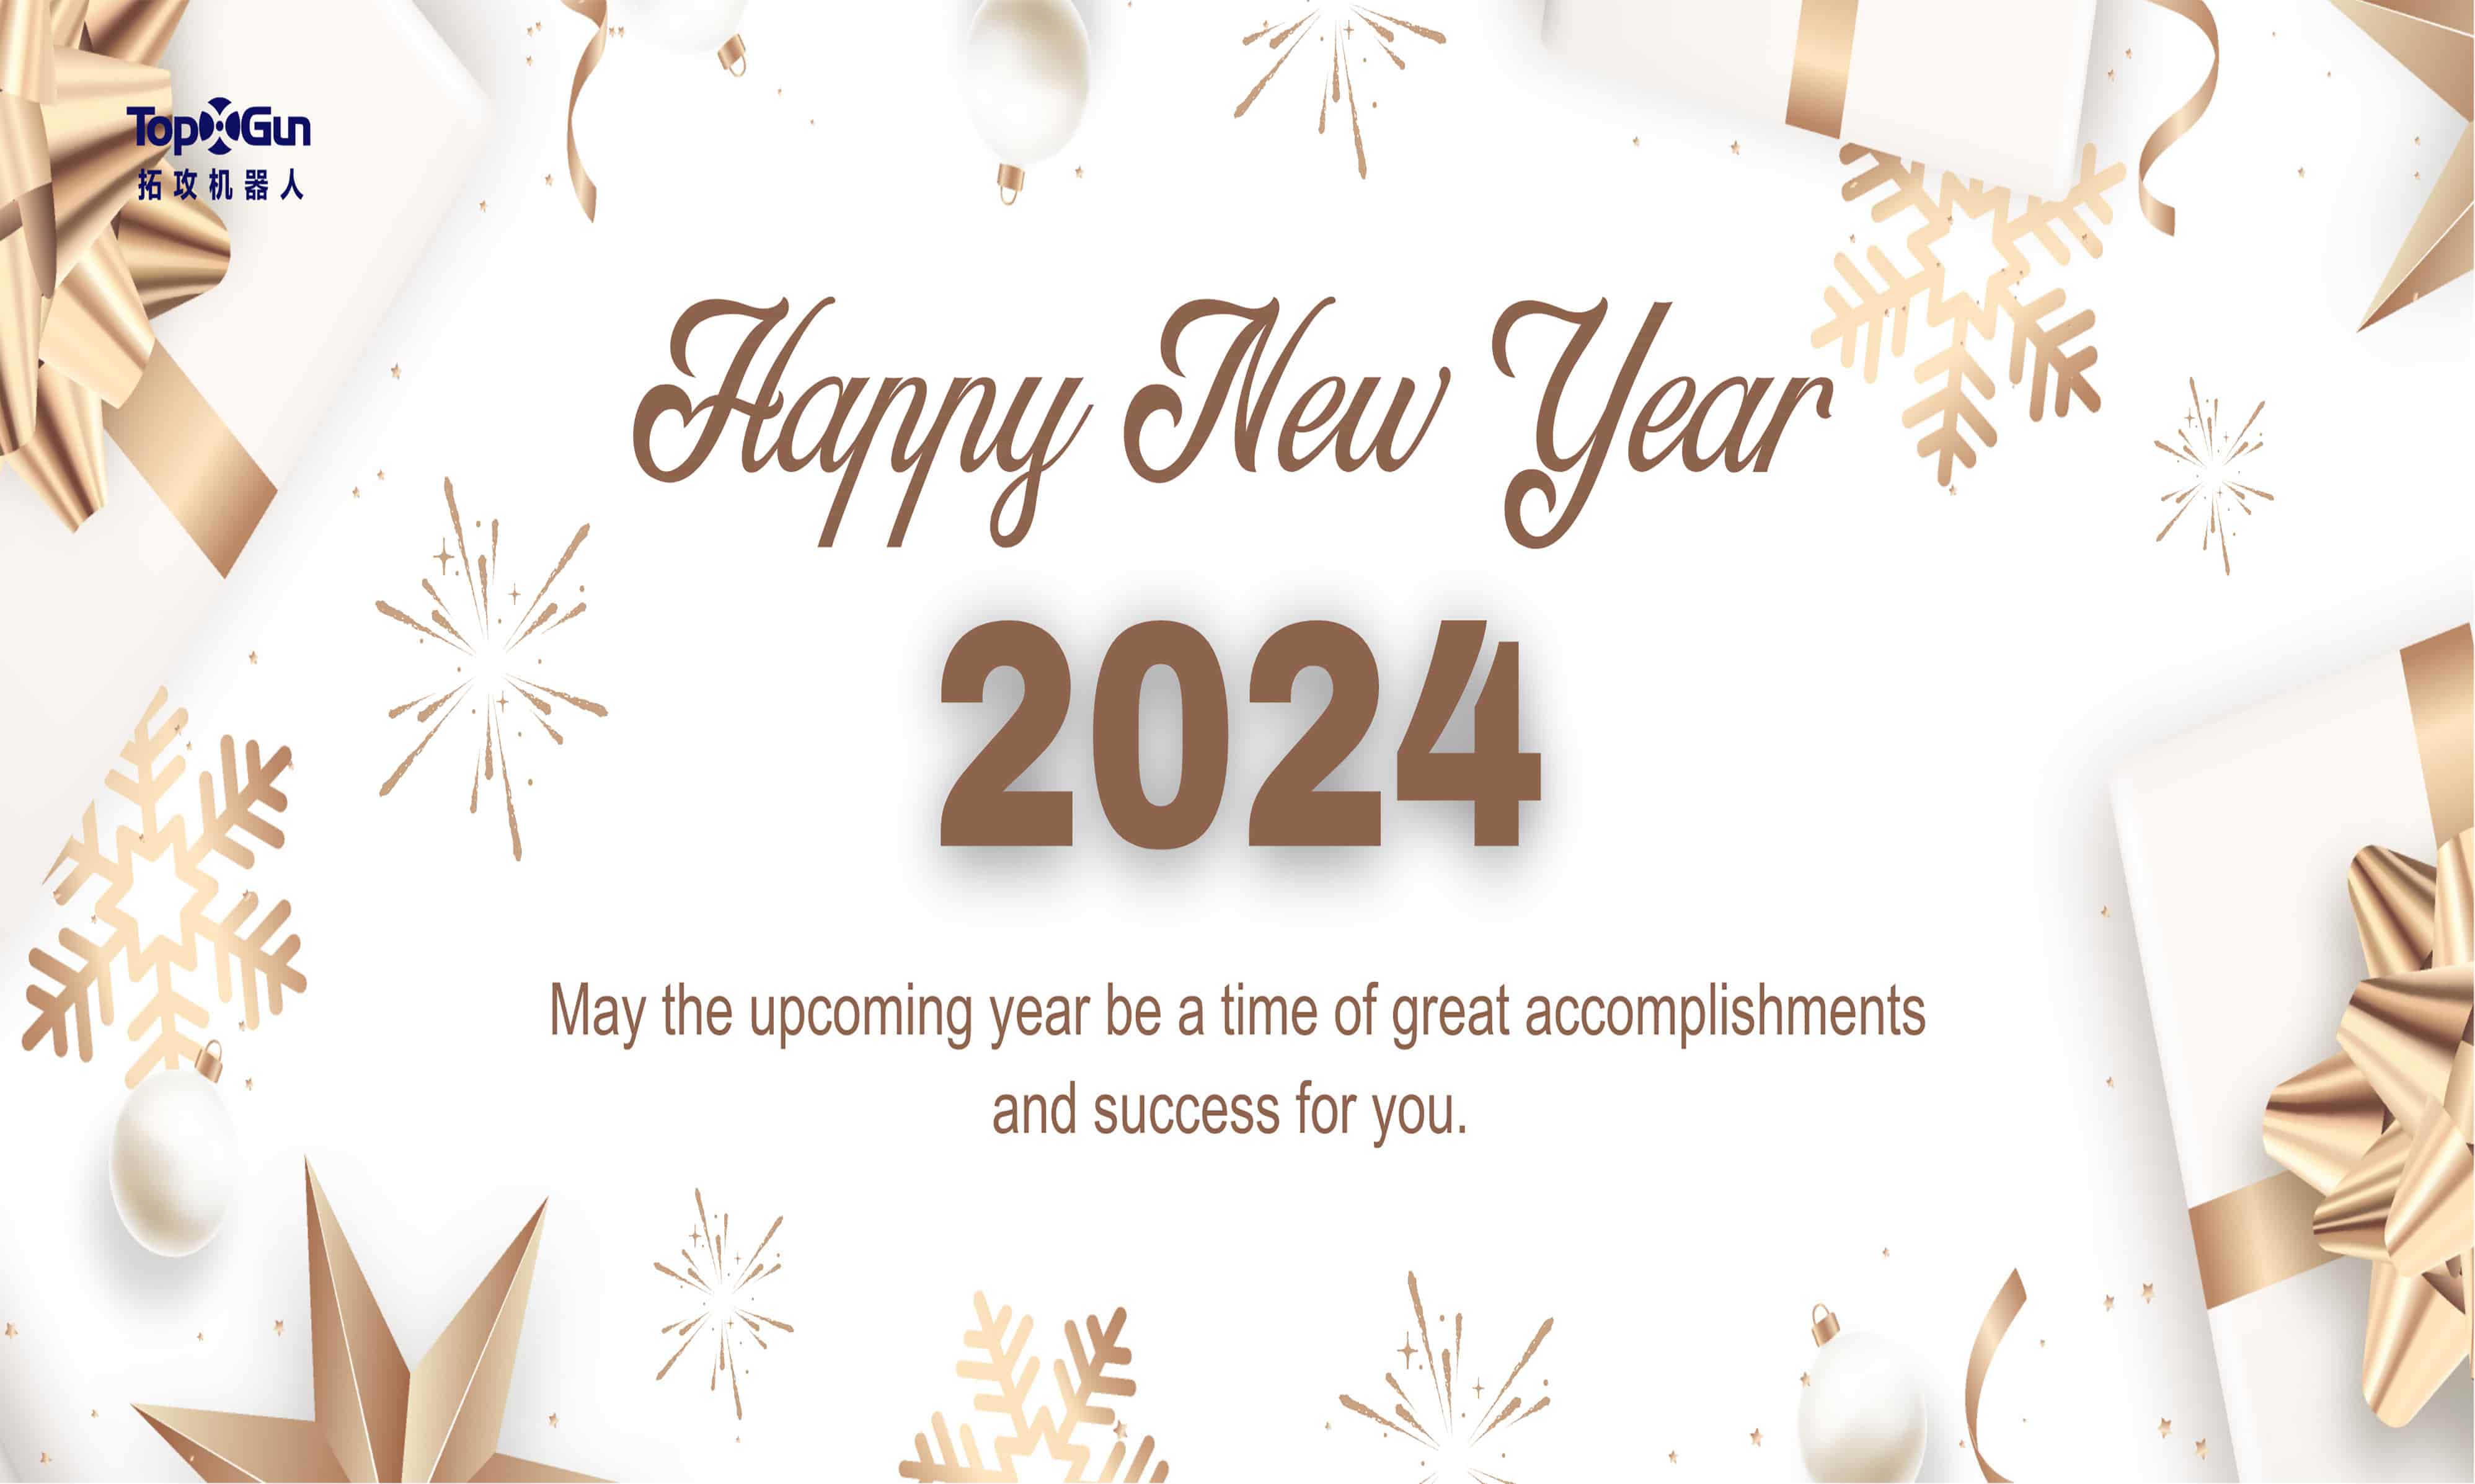 ¡Topxgun da la bienvenida al Año Nuevo 2024!